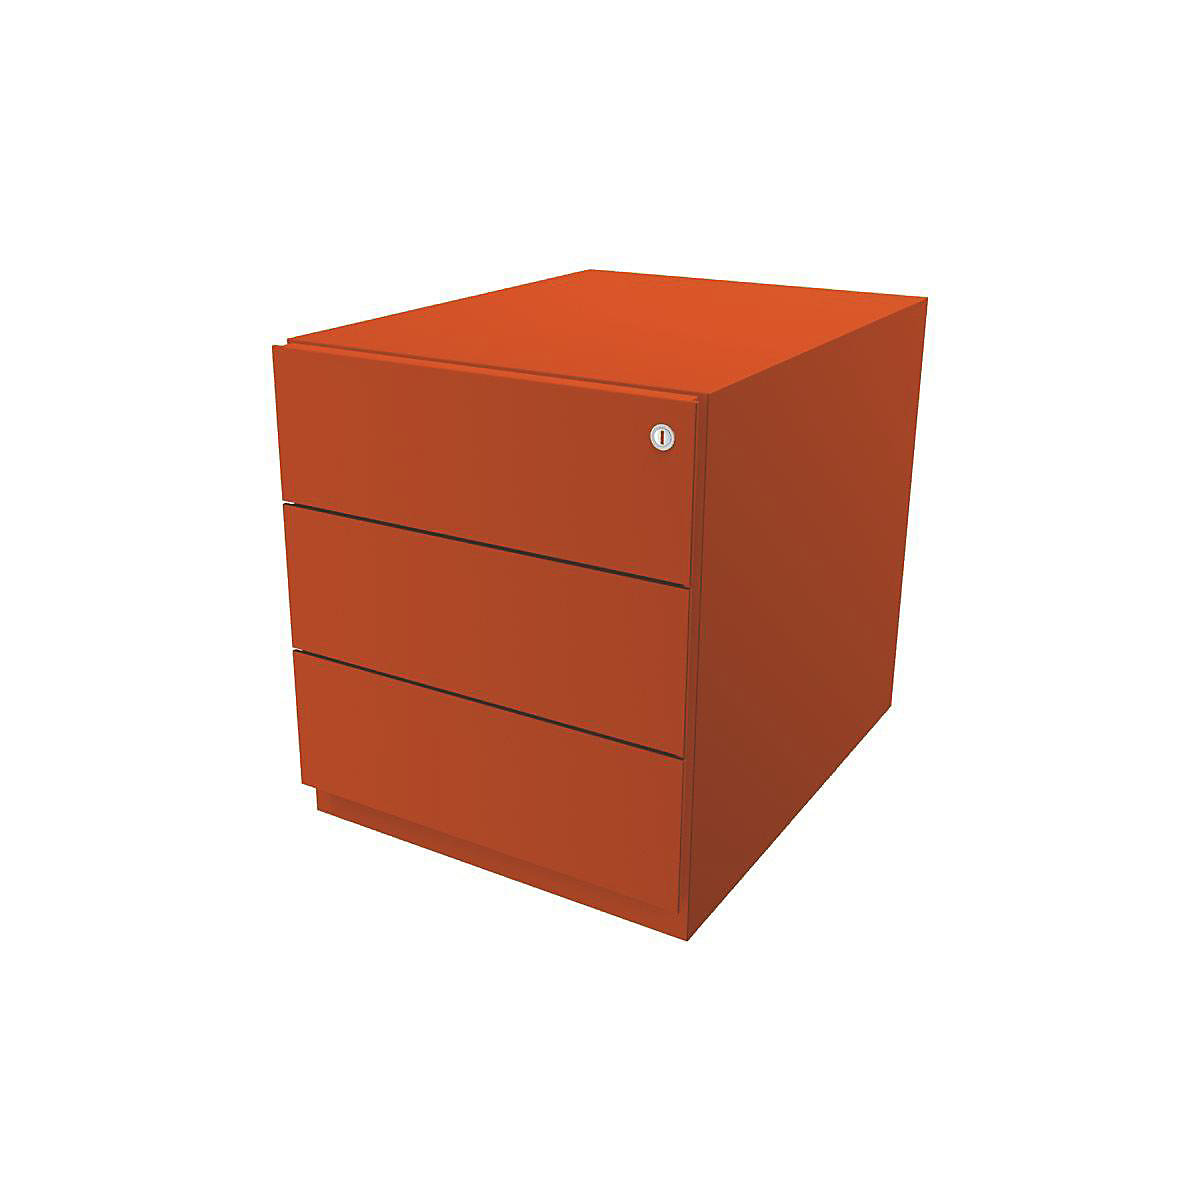 Pojízdný kontejner Note™, se 3 univerzálními zásuvkami – BISLEY, v x š x h 495 x 420 x 565 mm, s úchopnou lištou, oranžová-5